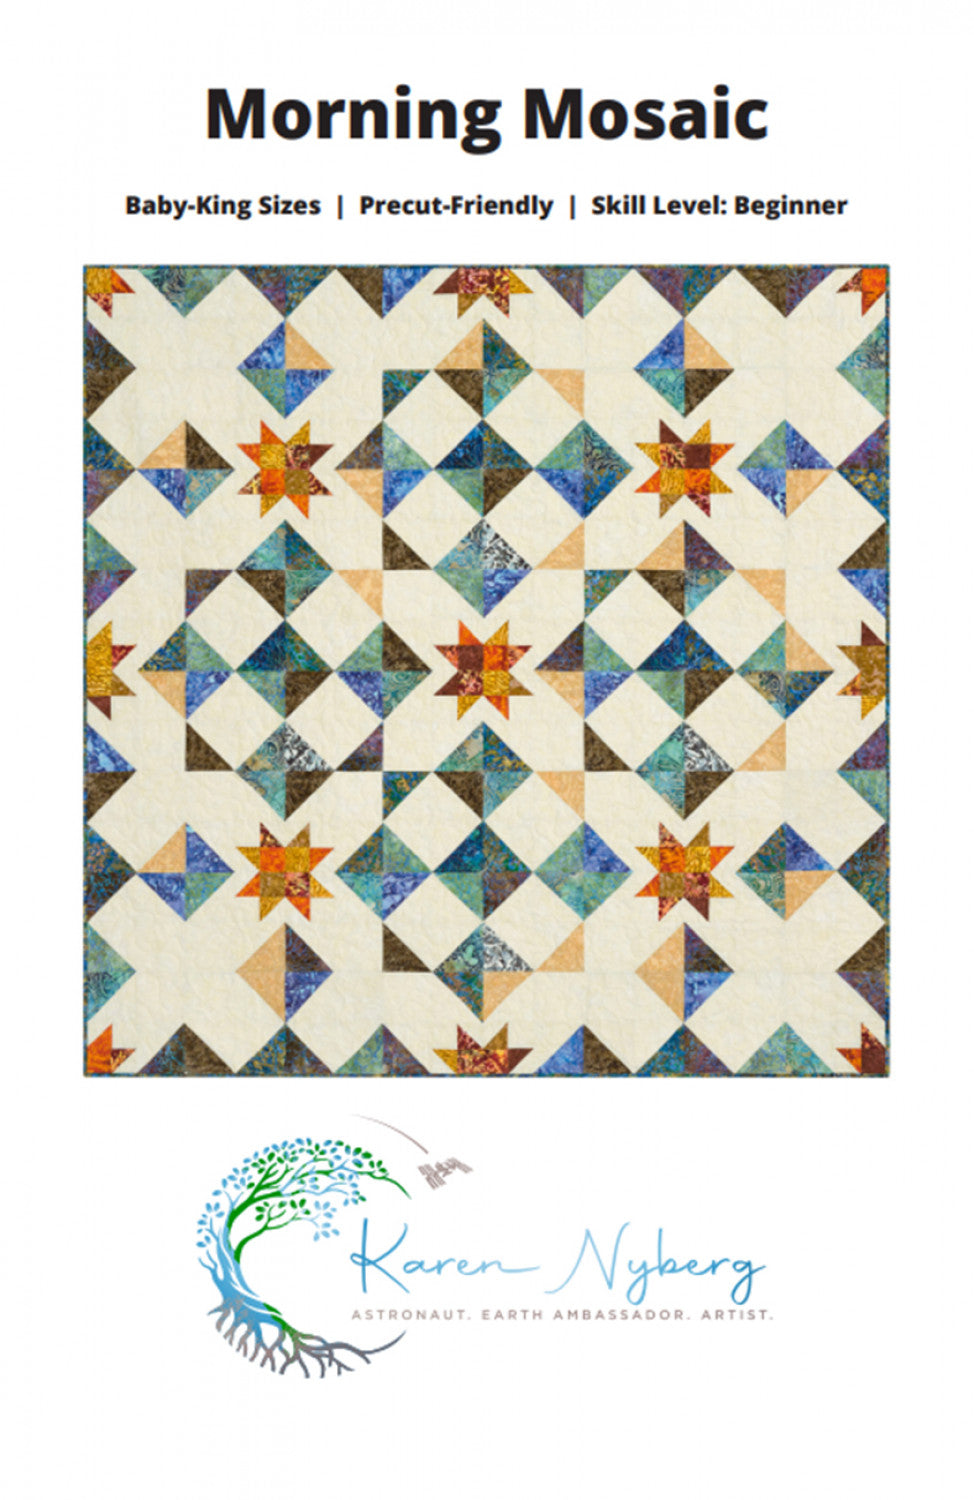 Morning Mosaic pattern Karen Nyberg